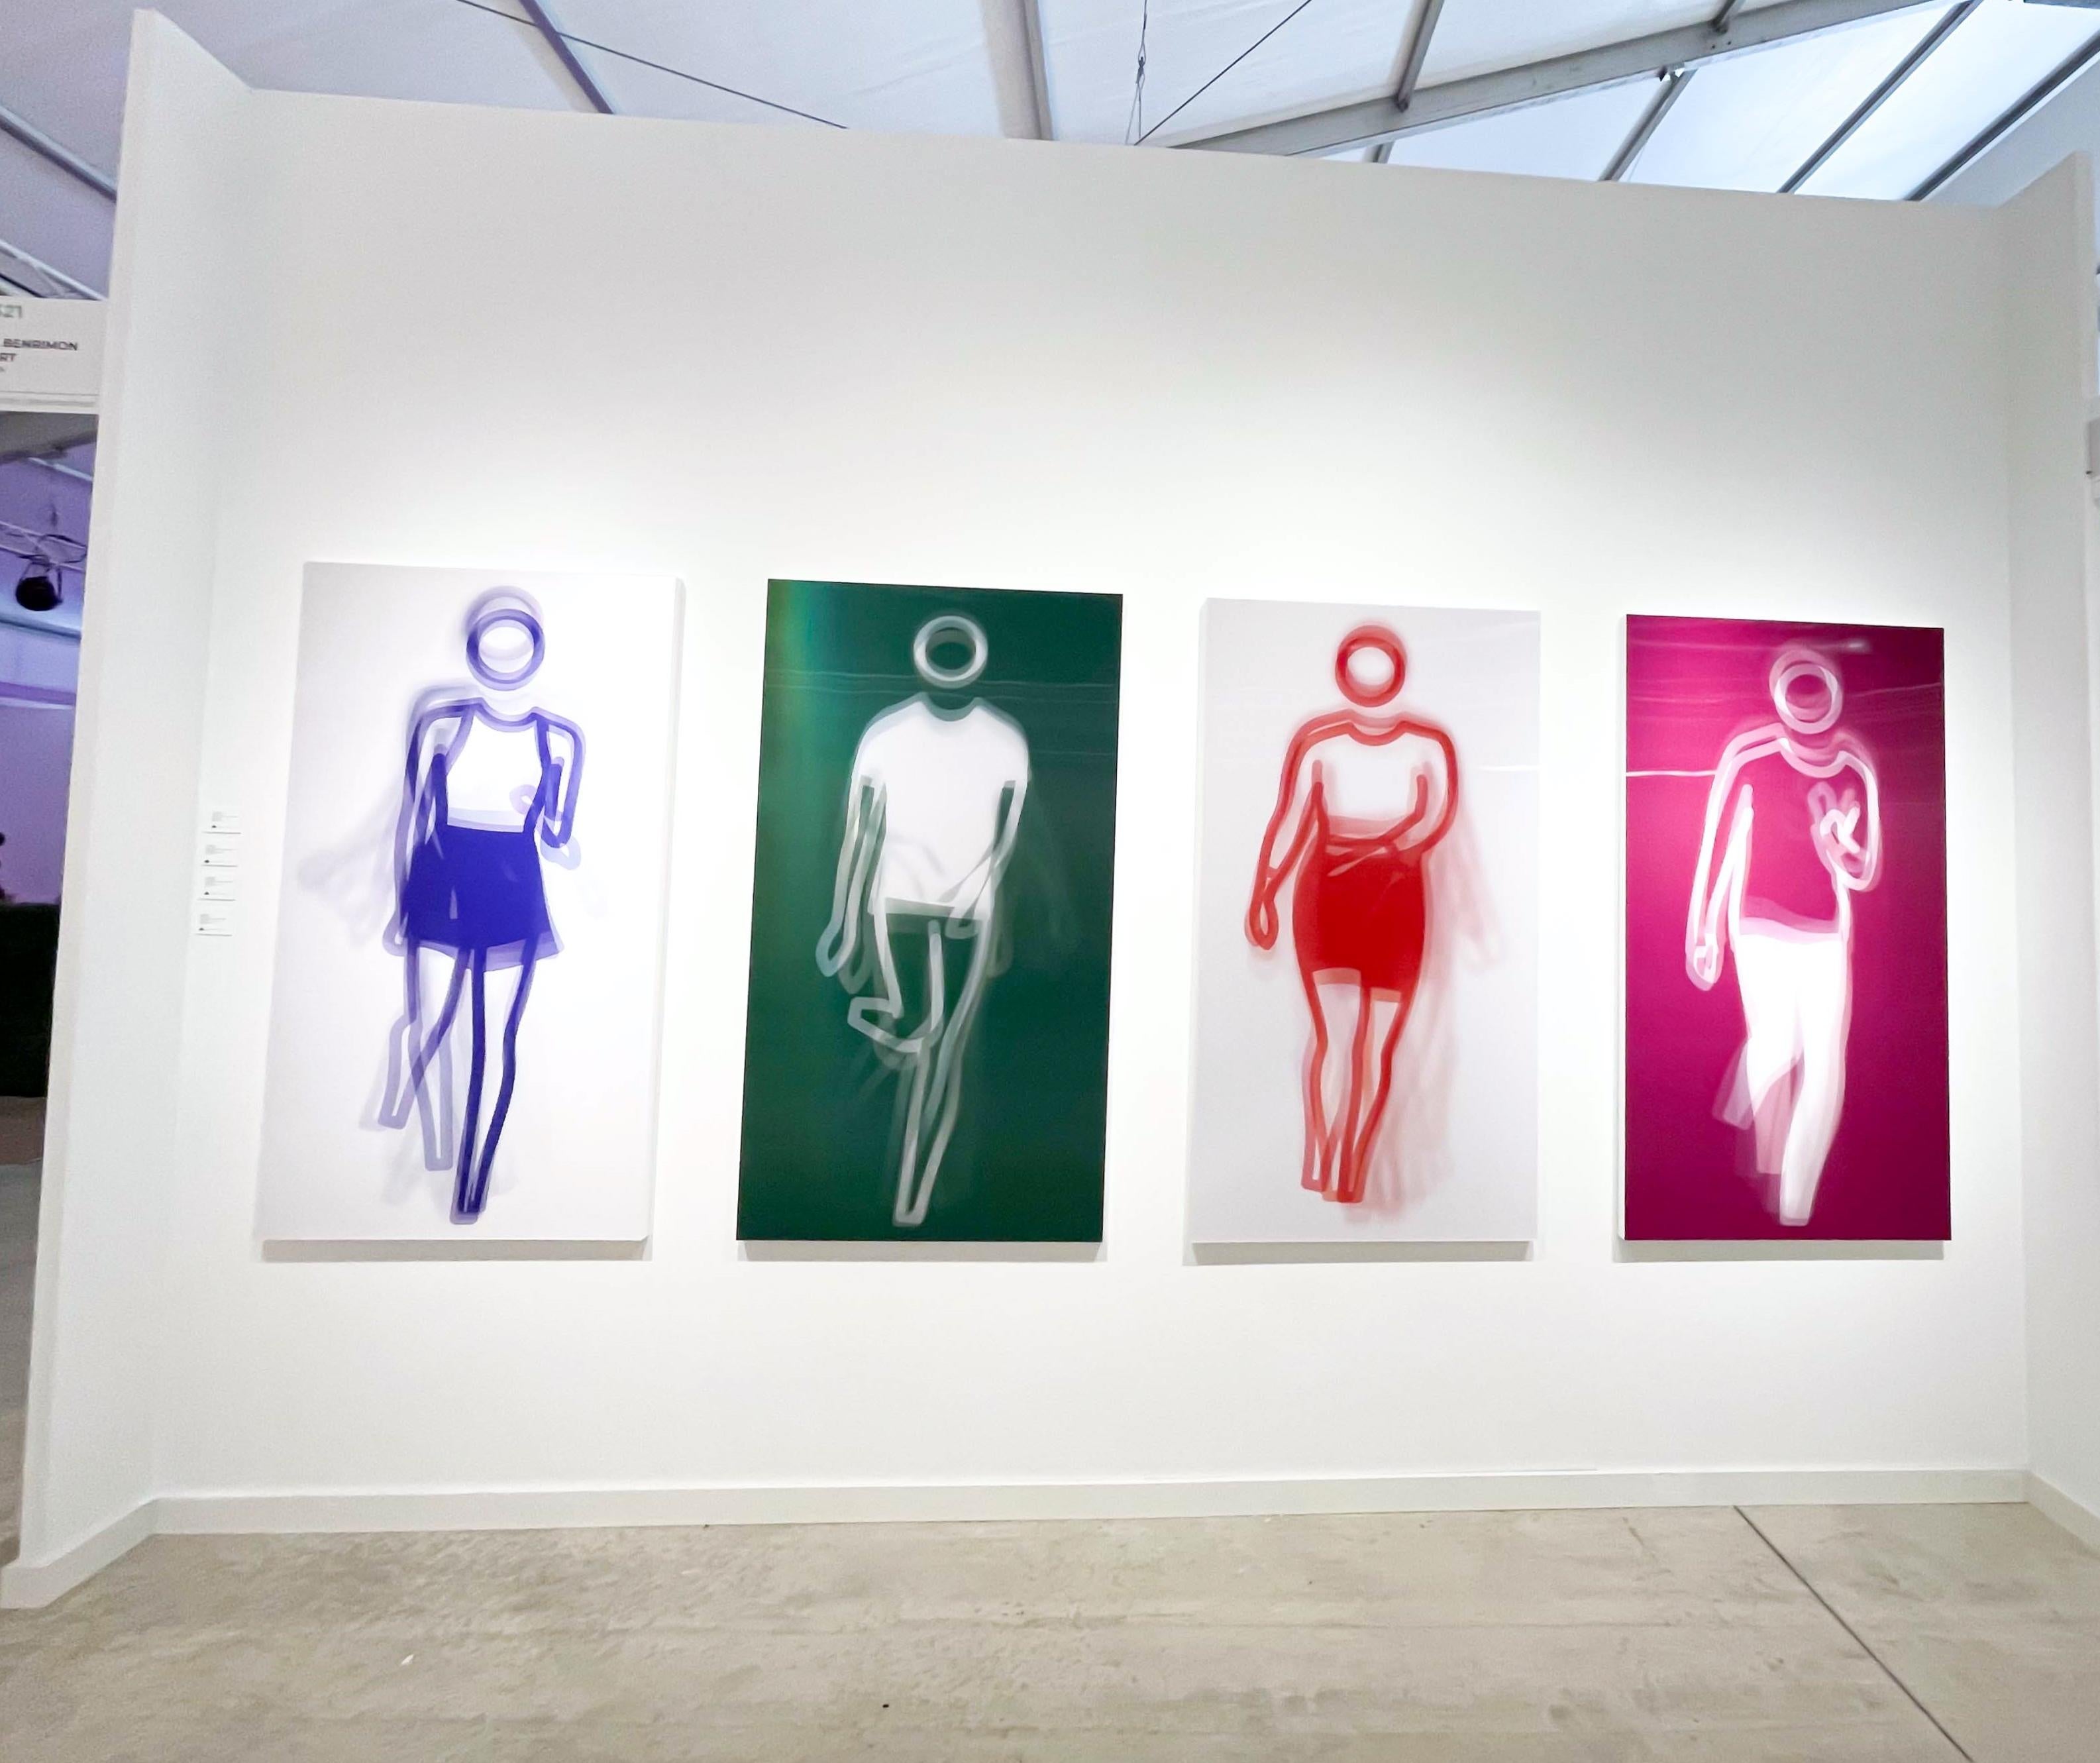 Moving Large Contemporary Acrylic Panel of Dancing Figure, Four Colors, Dance 4 (panneau acrylique contemporain de grande taille représentant une figure dansante) - Pop Art Print par Julian Opie